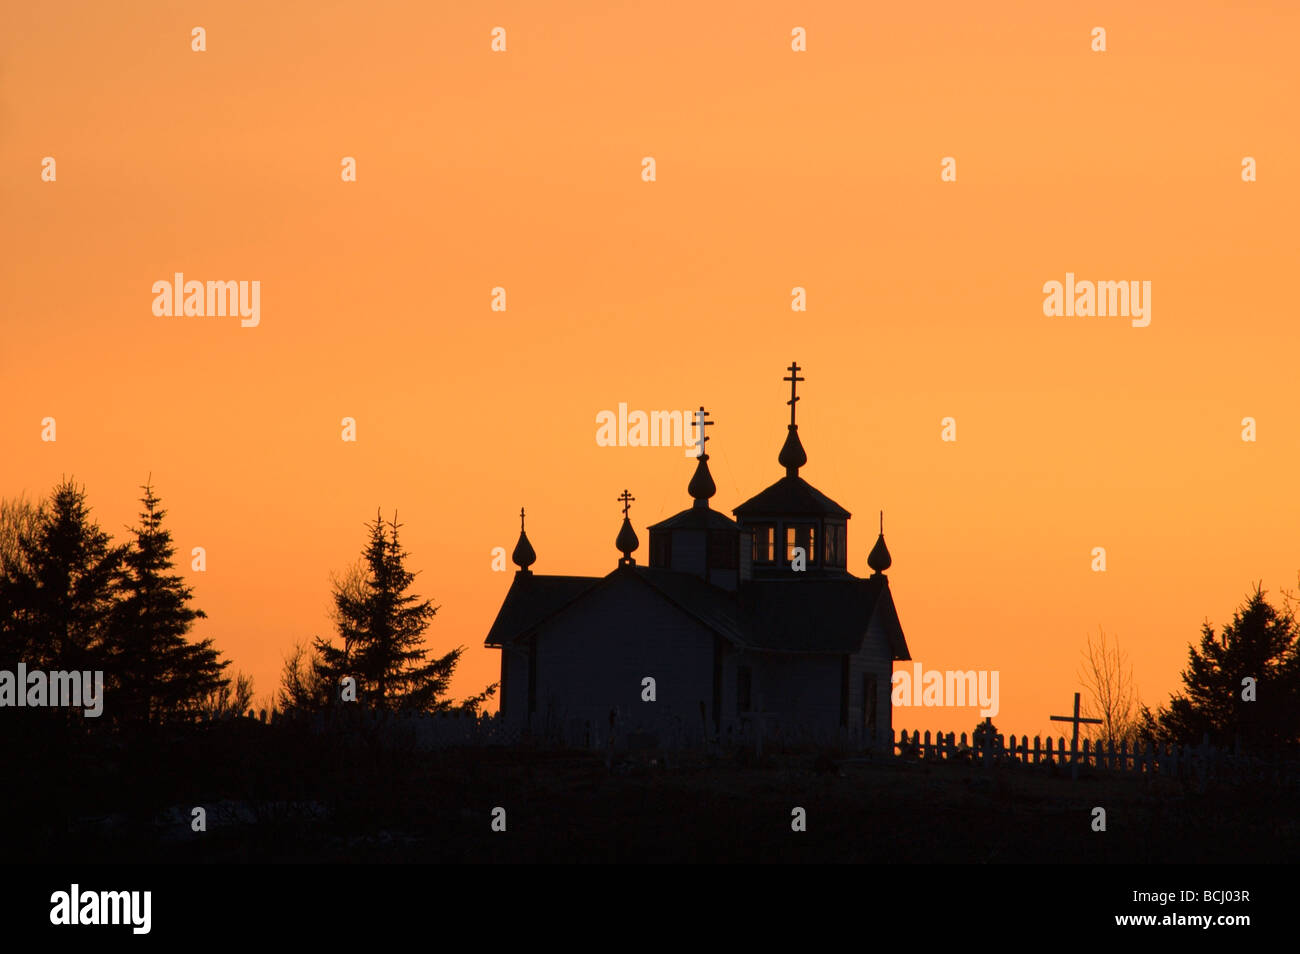 Eglise Orthodoxe Russe @ Sunset Ninilchik KP AK Silhouette de printemps Banque D'Images